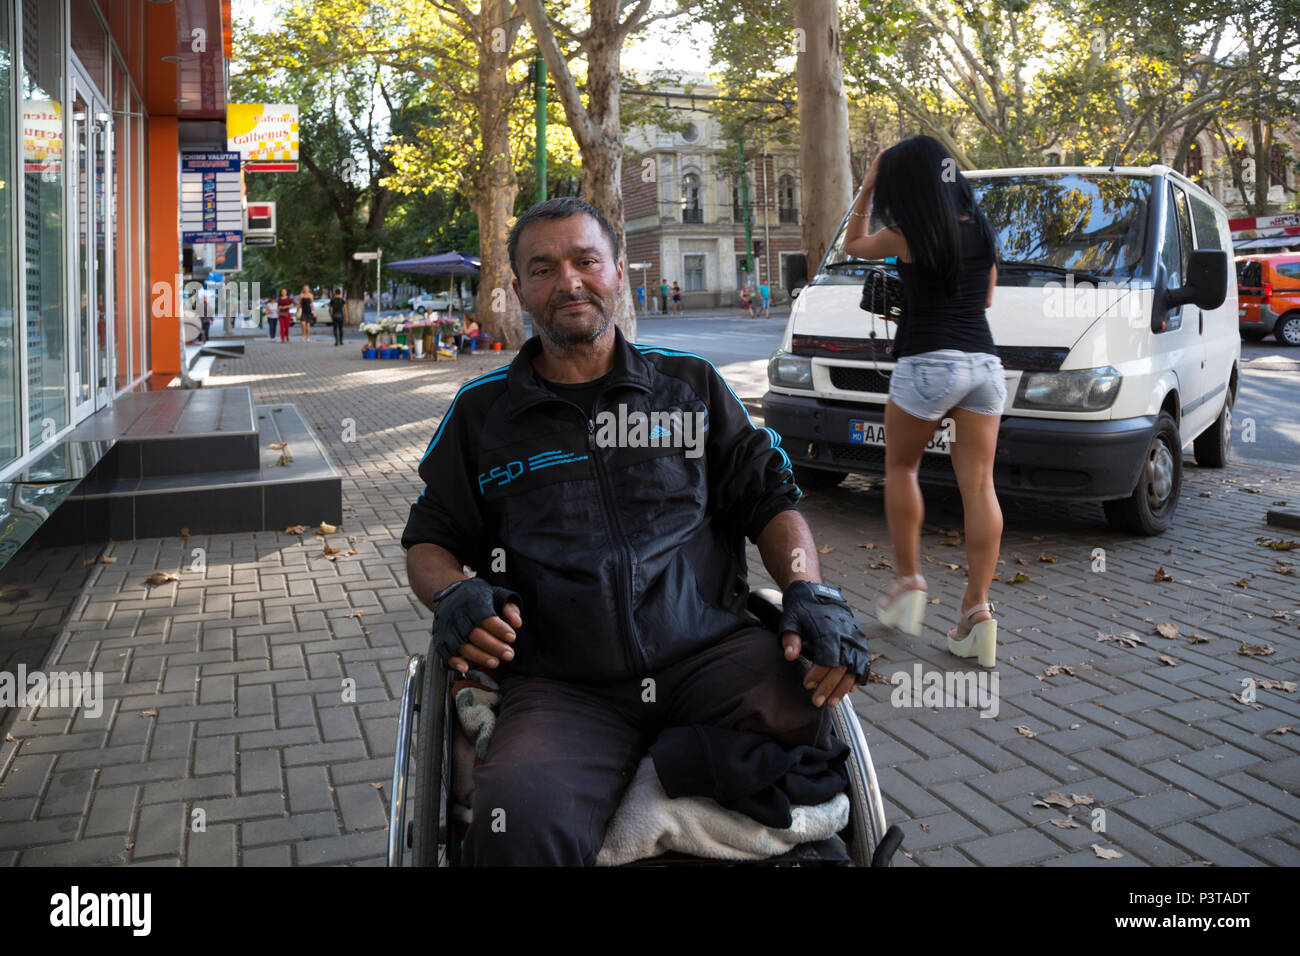 Moldavie, Chisinau - appauvri non valide dans le fauteuil roulant Banque D'Images